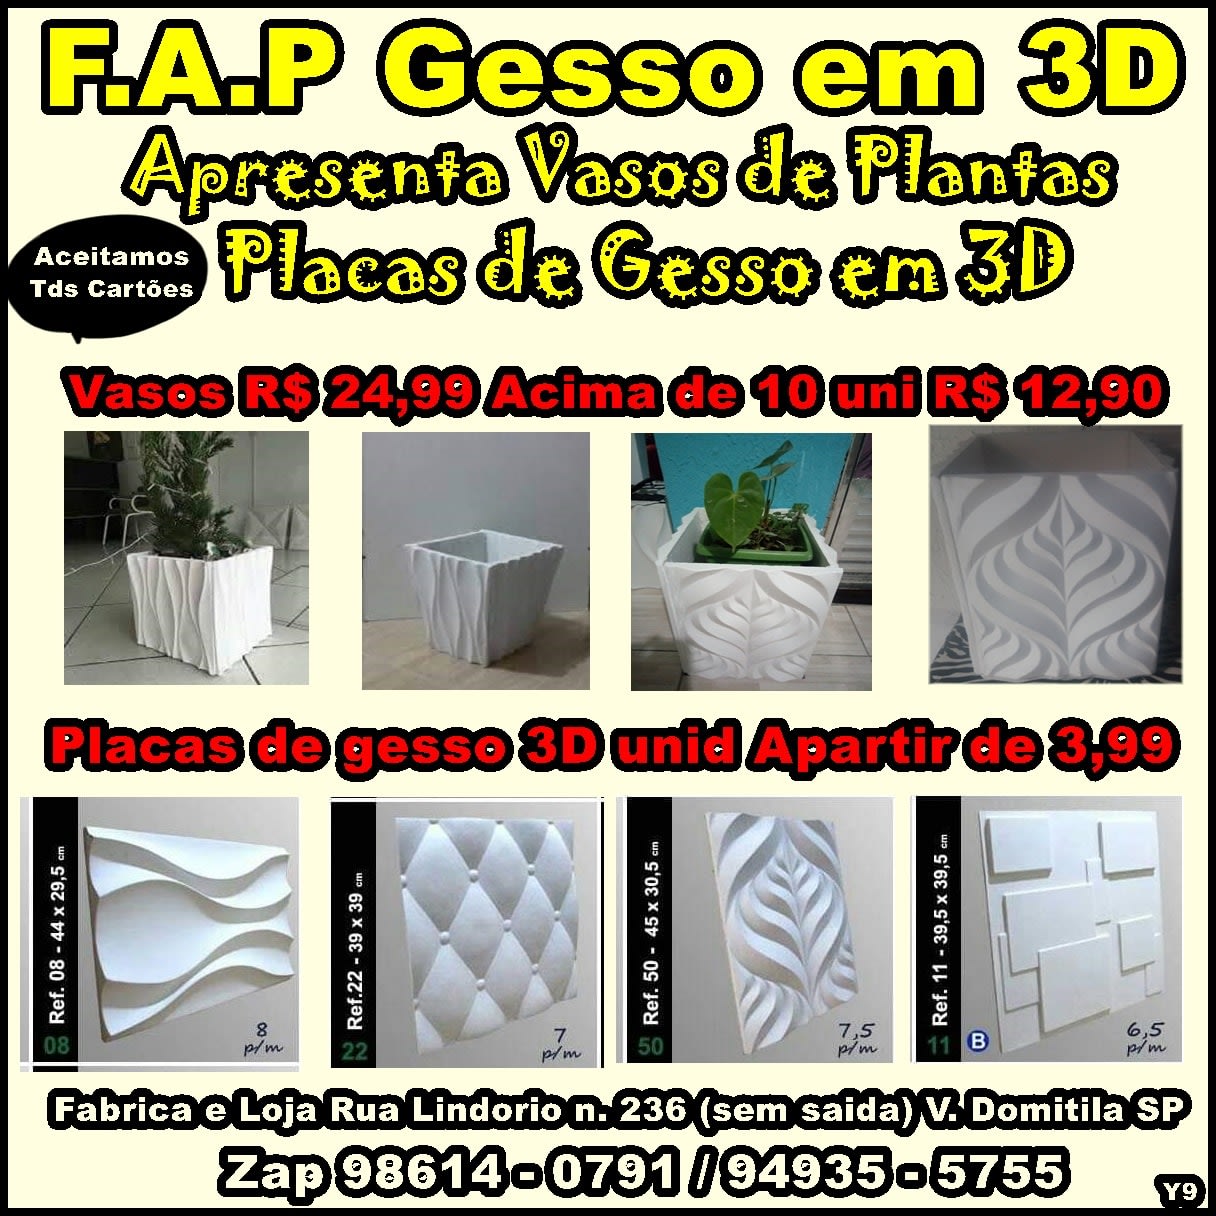 F.A.P Gesso placas em 3D